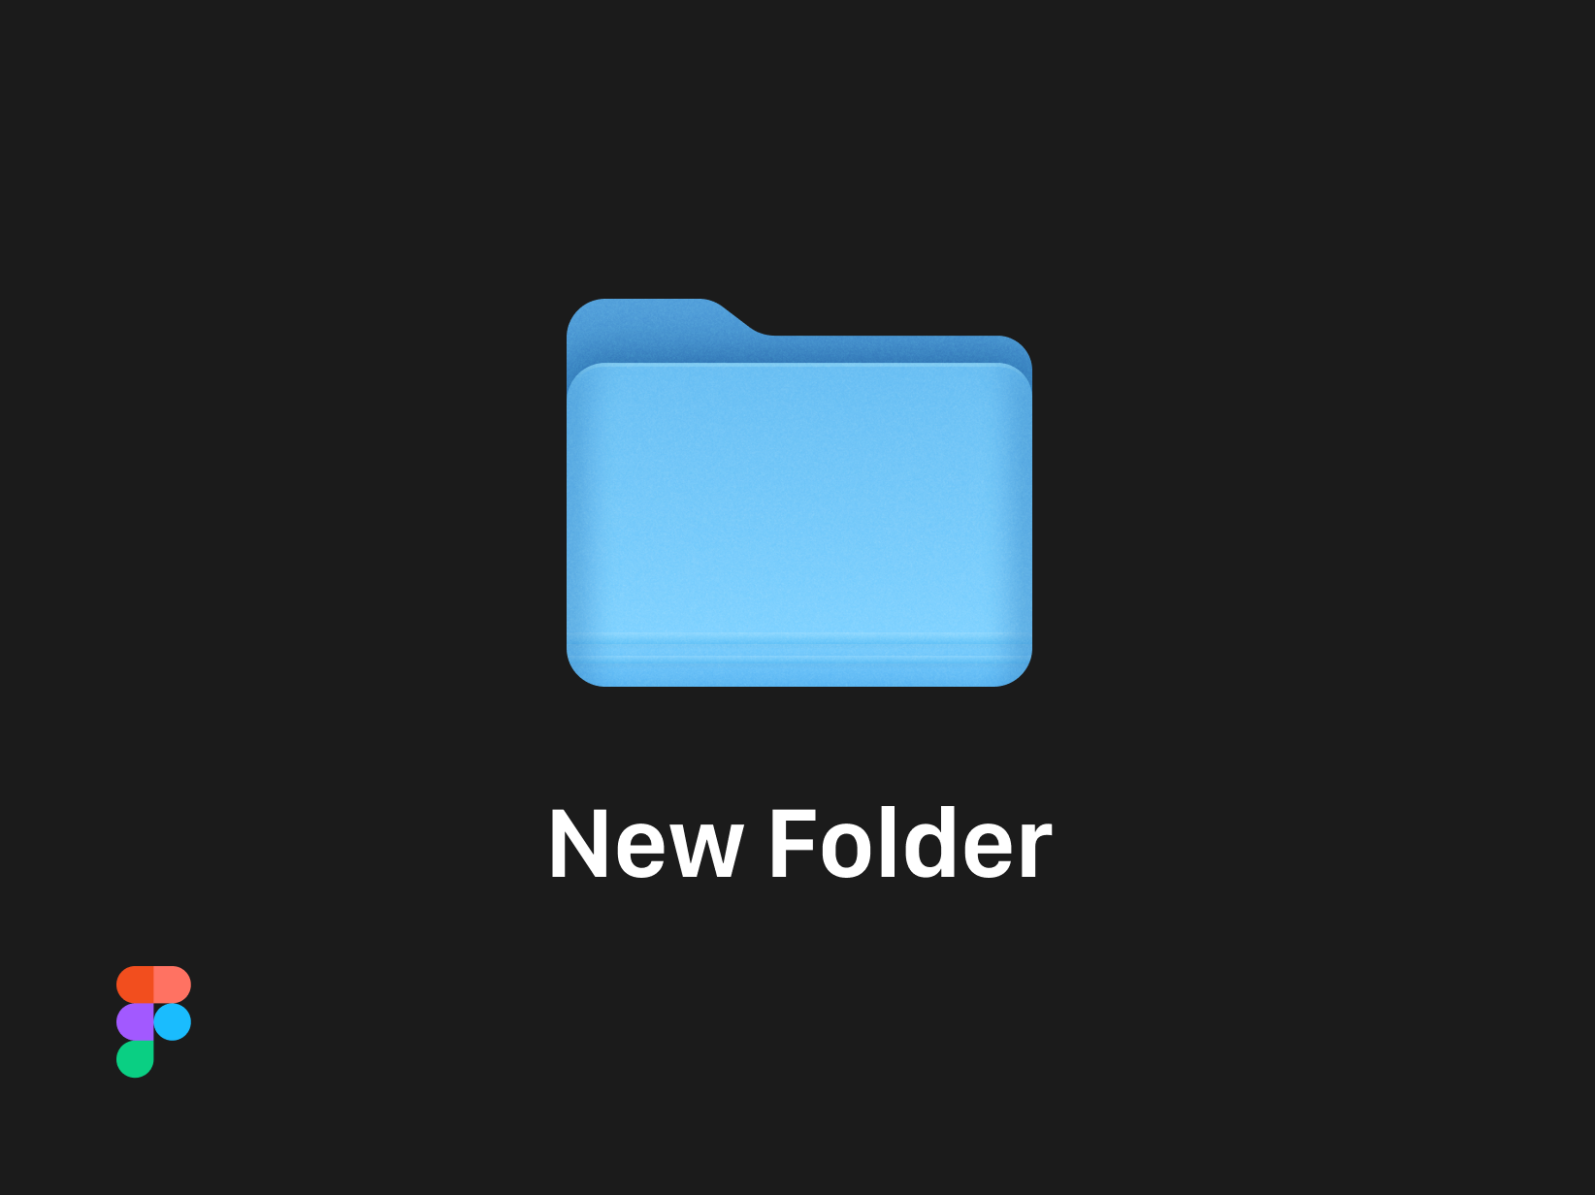 macos big sur folder icon